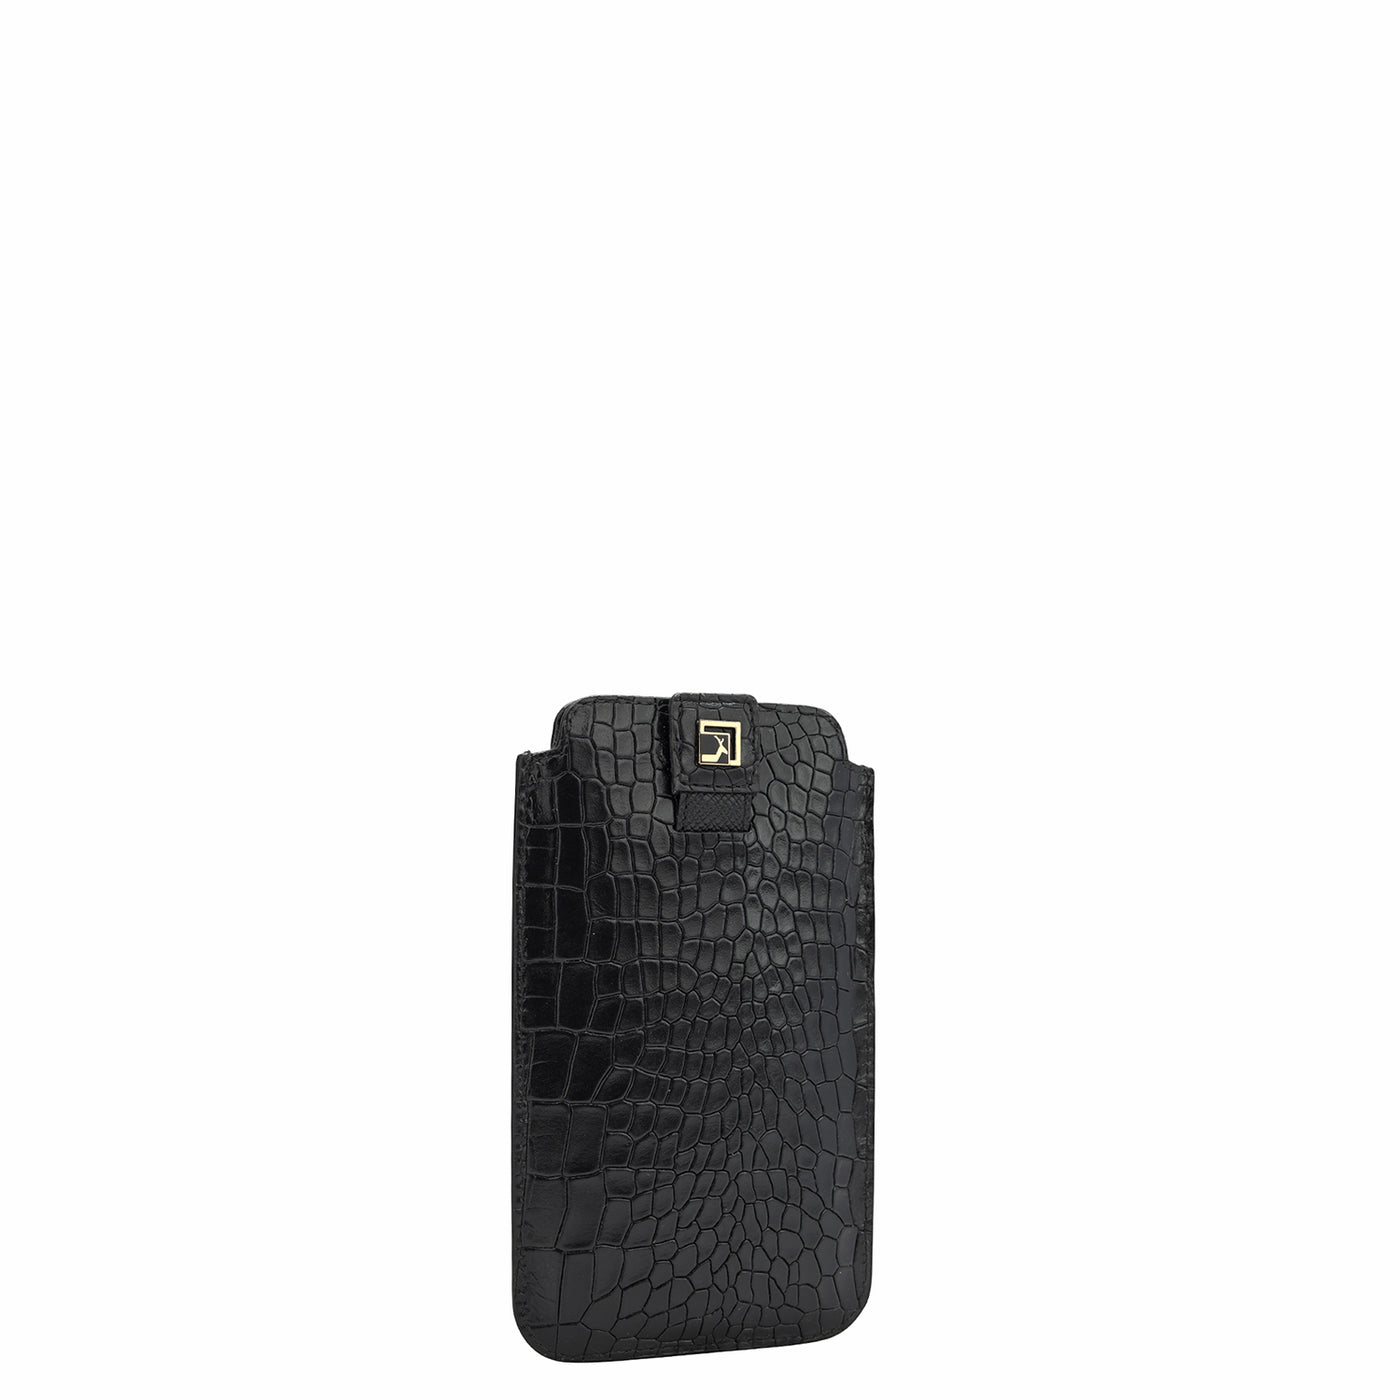 Croco Leather Mobile Case - Black